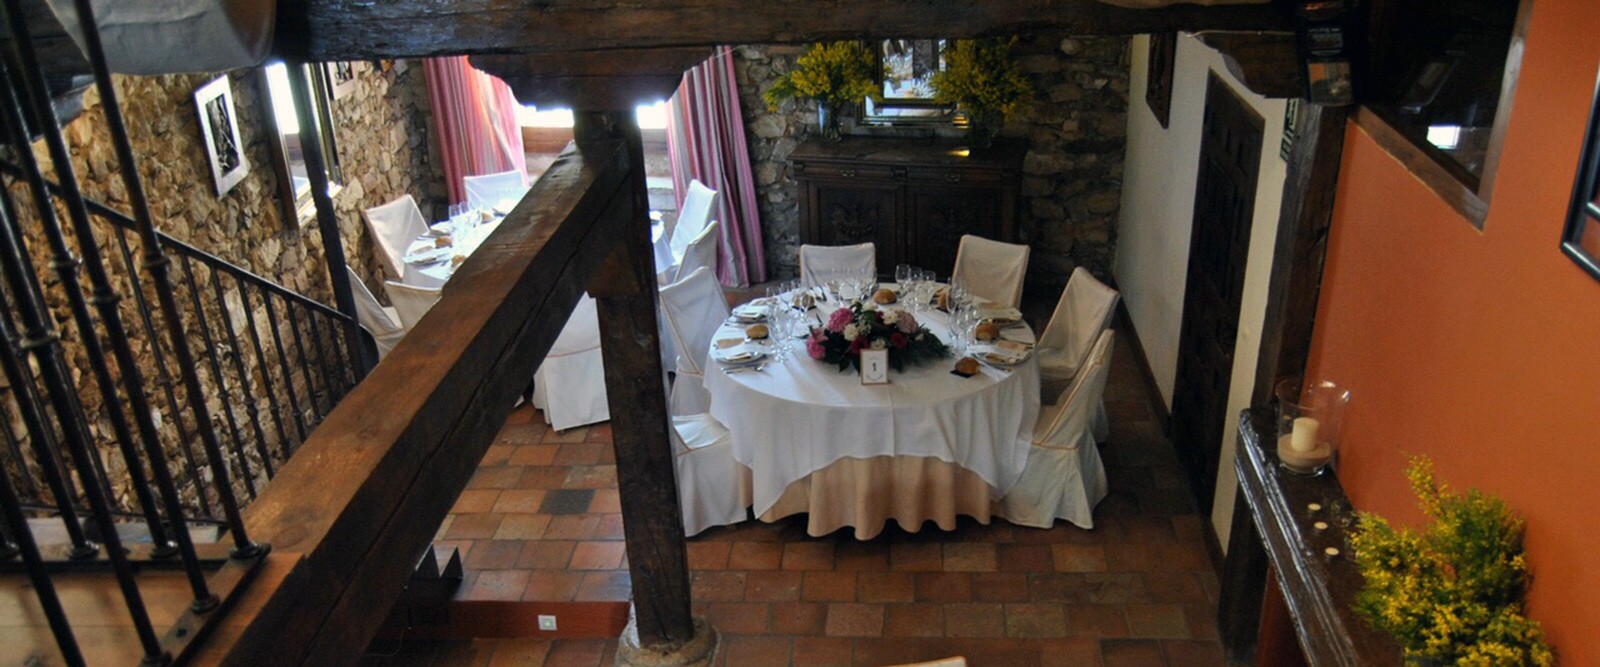 Mesa celebraciones - Restaurante El Soportal en Pedraza, Segovia